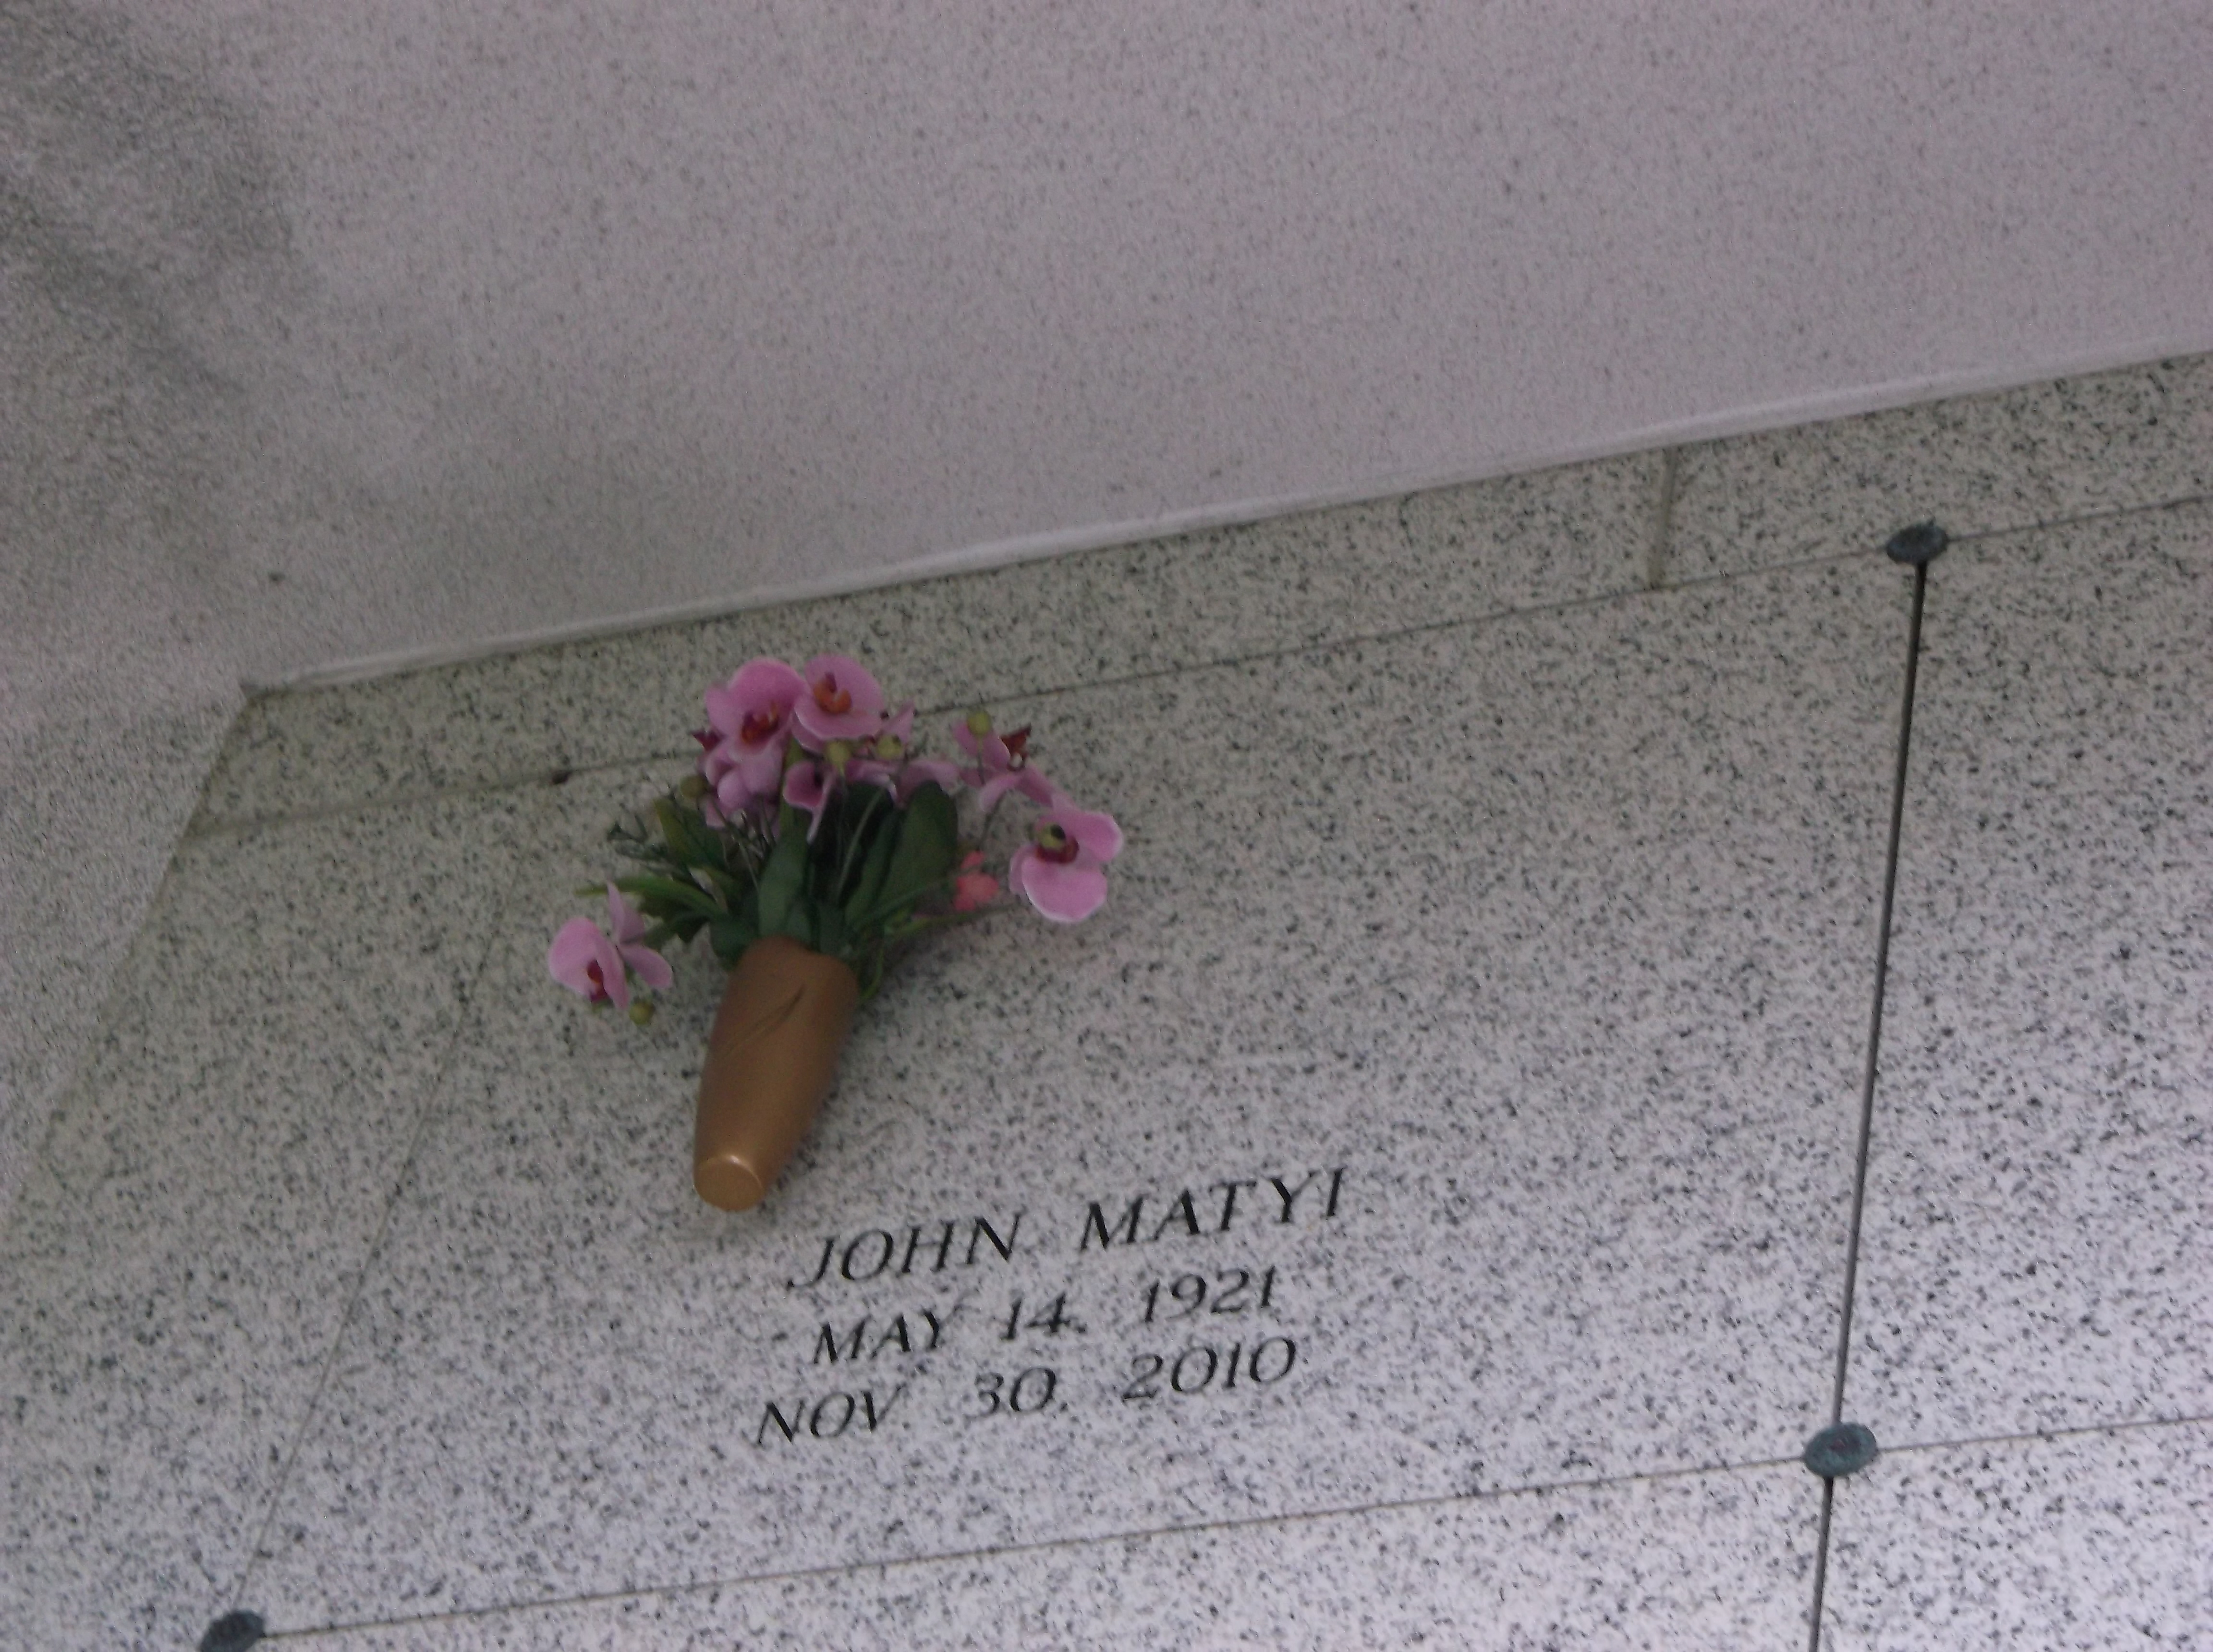 John Matyi